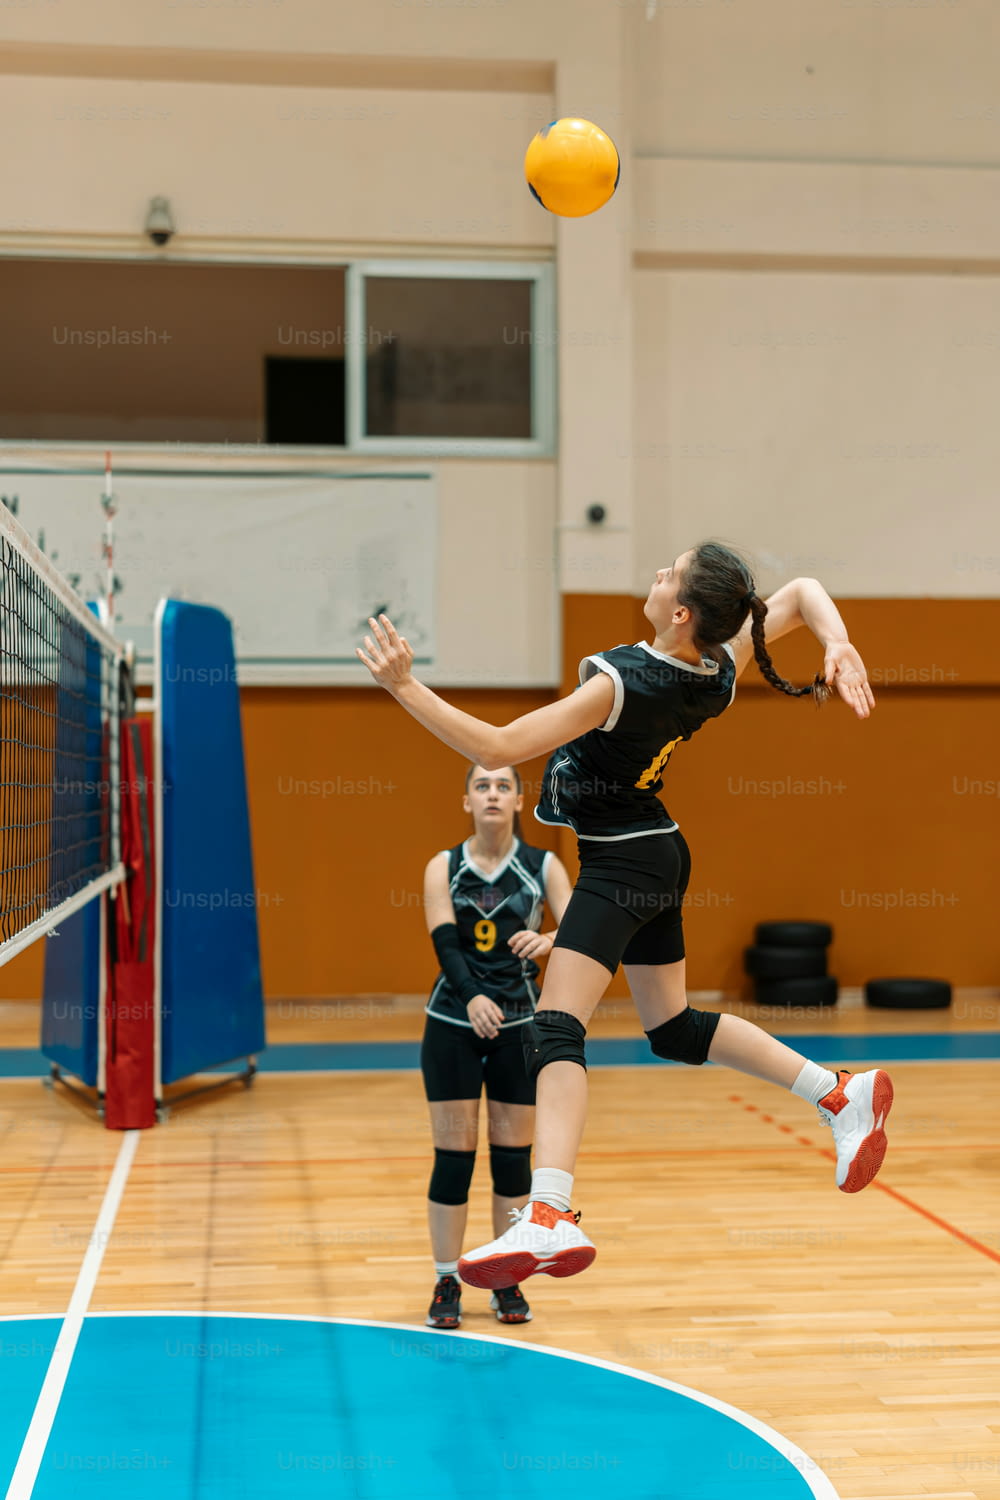 una mujer saltando para golpear una pelota de voleibol